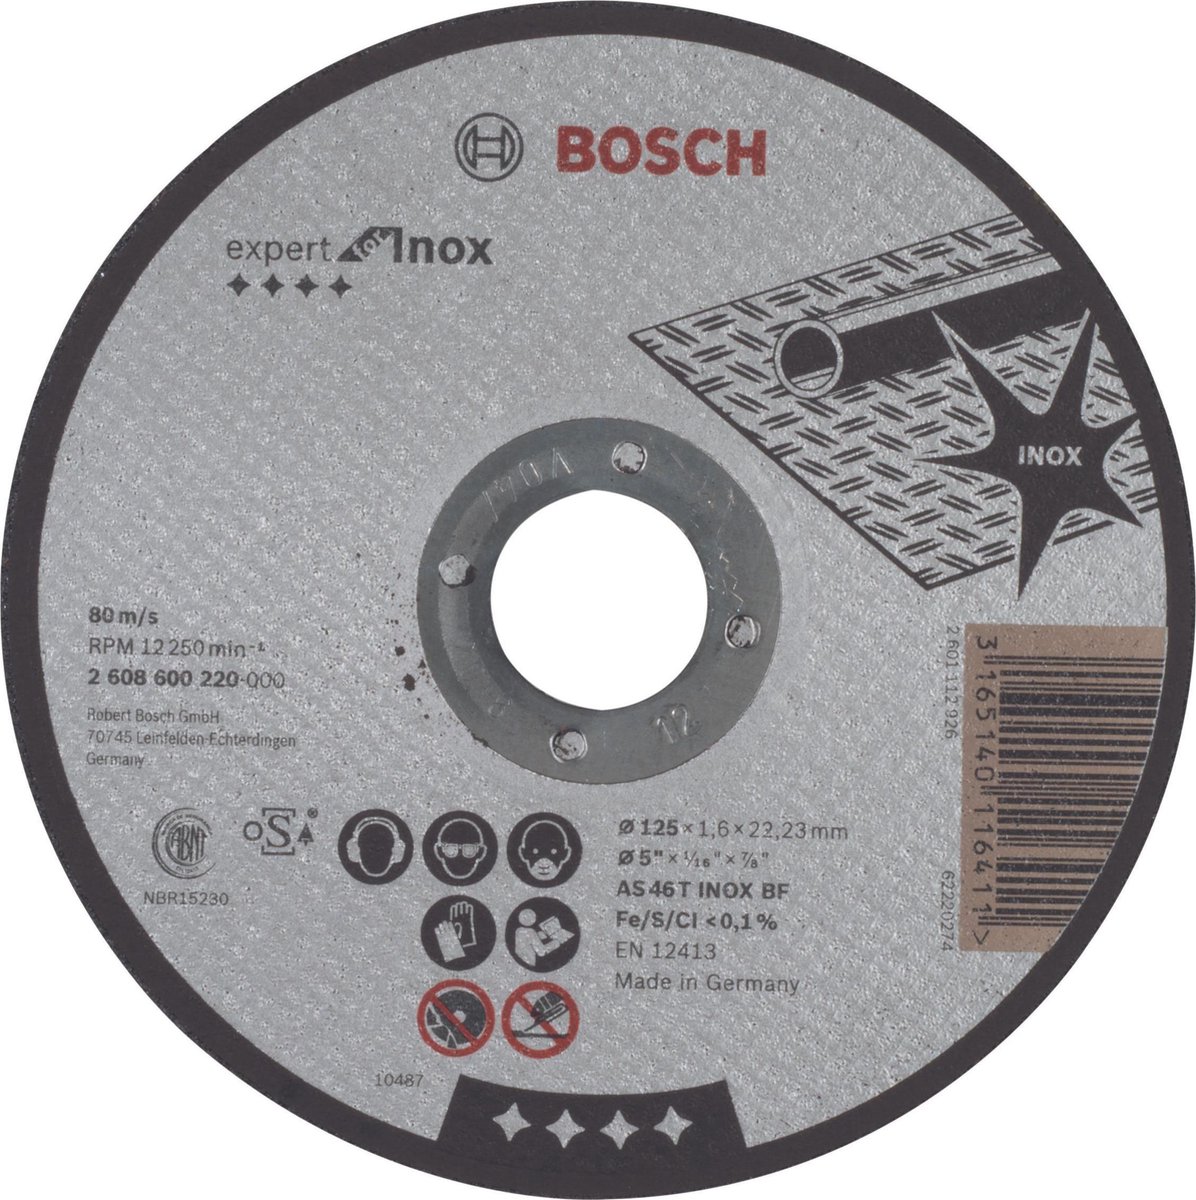 Bosch - Doorslijpschijf recht Expert for Inox AS 46 T INOX BF, 125 mm, 22,23 mm, 1,6 mm